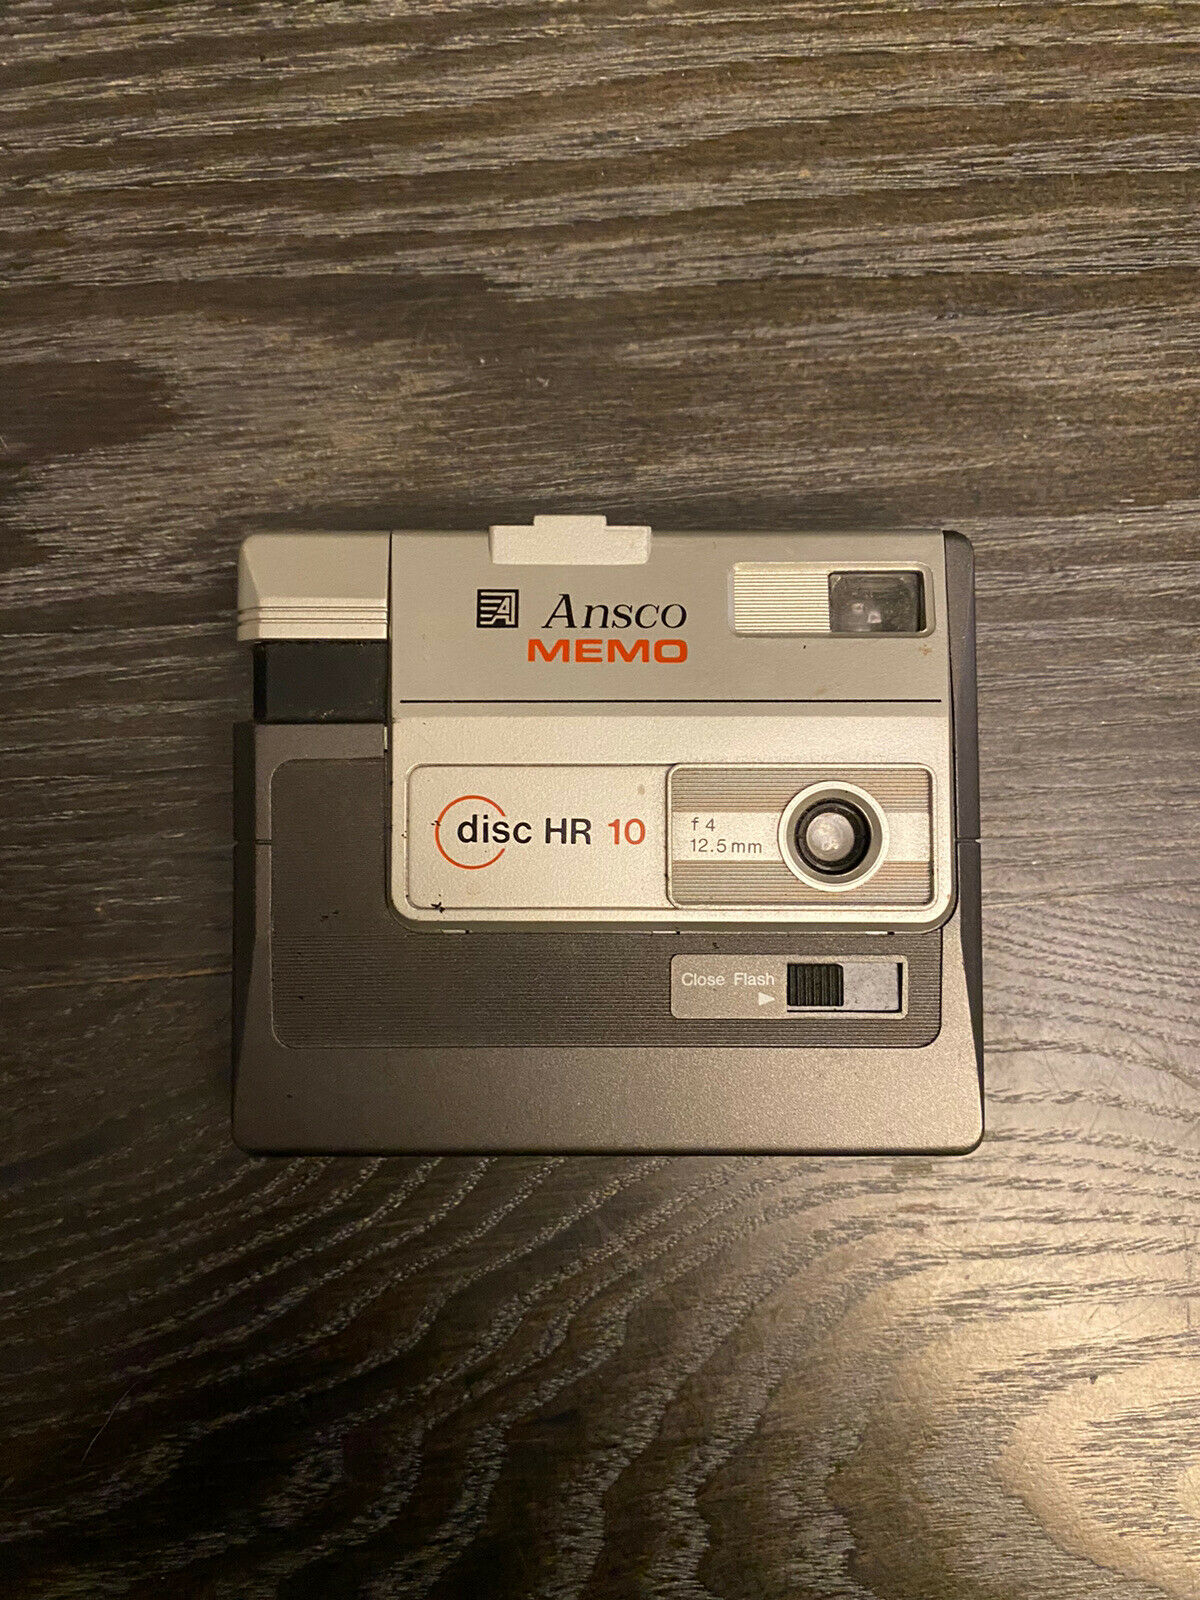 Ansco Memo Disc Hr10 Vintage Compact Pocket Film Camera 12.5mm F/4 Lens